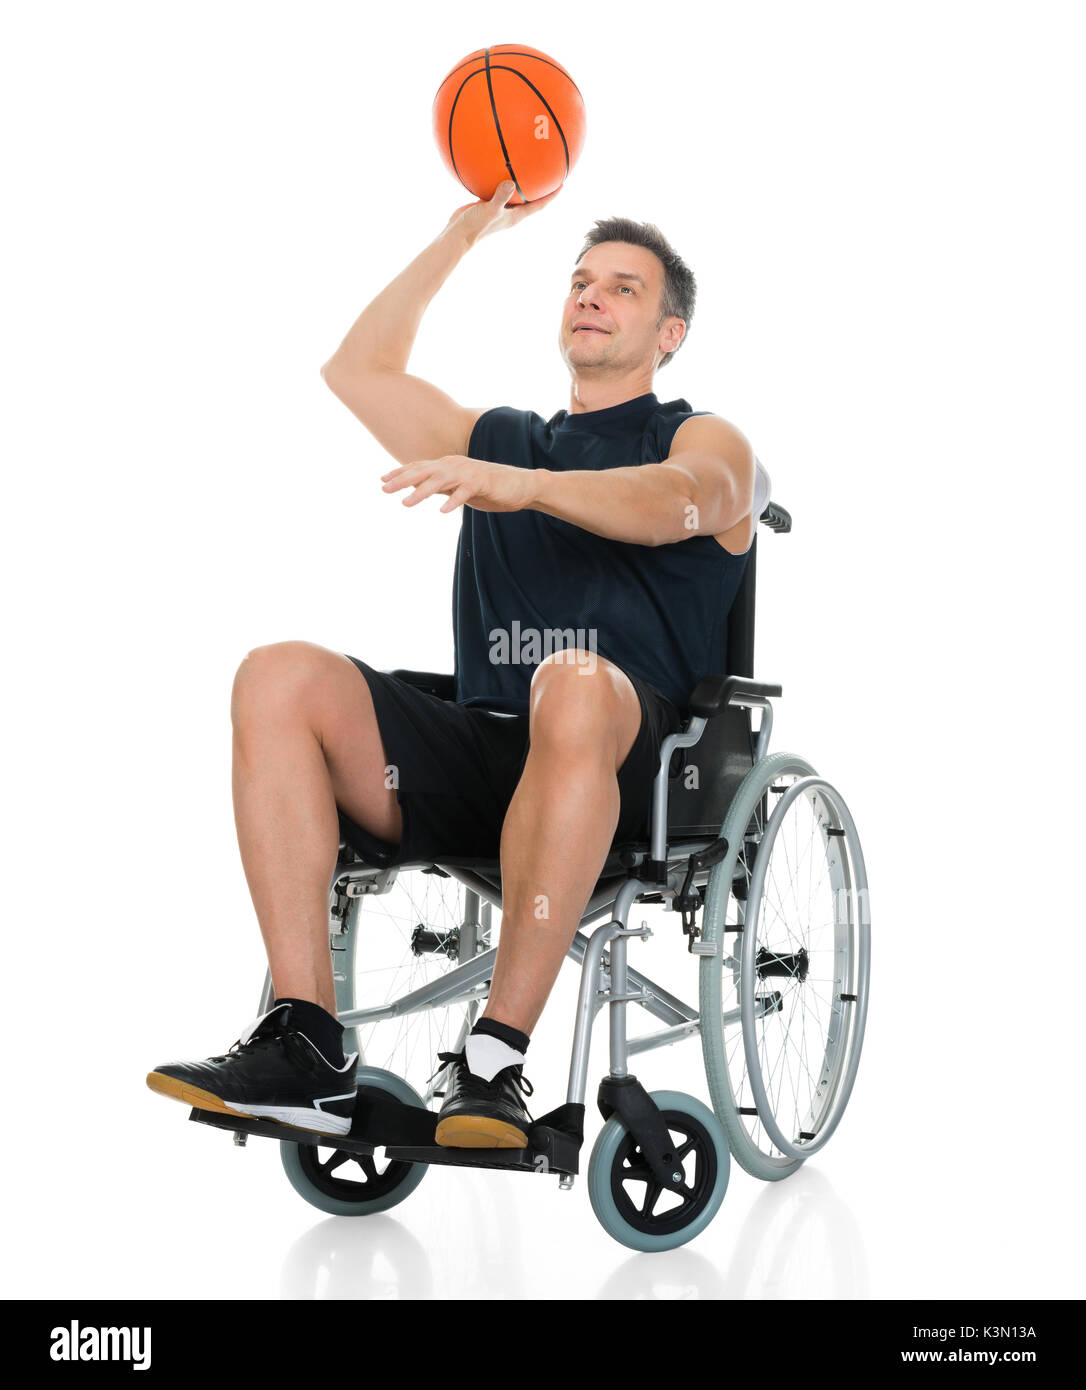 Behinderte Basketball Player auf Rollstuhl werfen Kugel über weißen Hintergrund Stockfoto